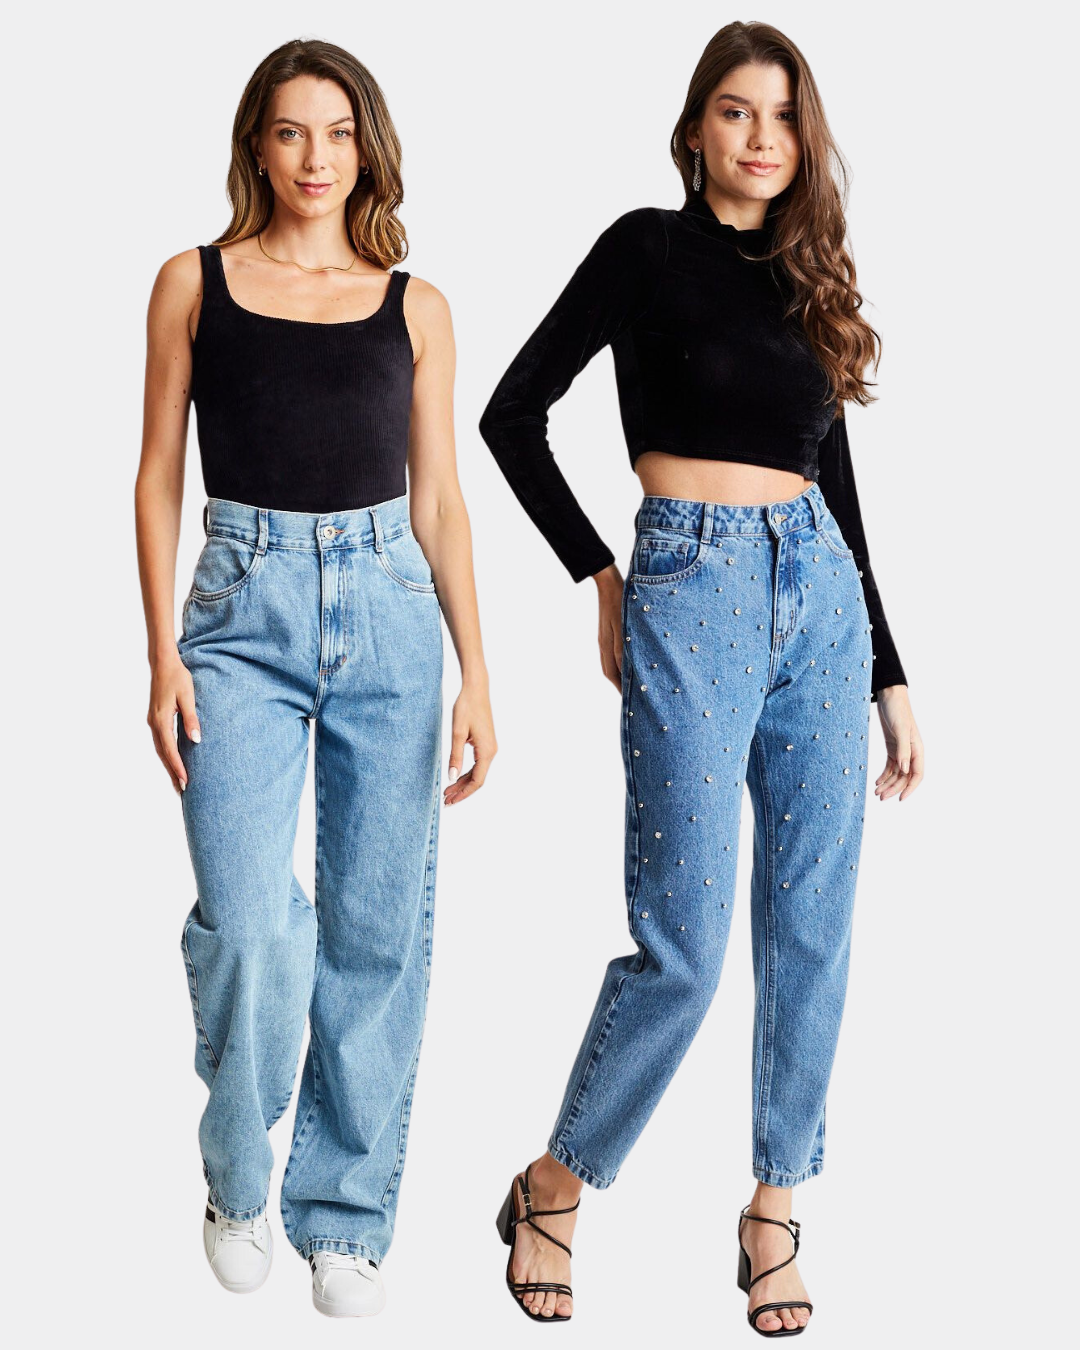 A modelo à esquerda veste body veludo alças preto gang feminino e a modelo à direita veste blusa manga longa cropped veludo preto, ambas com calça jeans de lavagem clara.